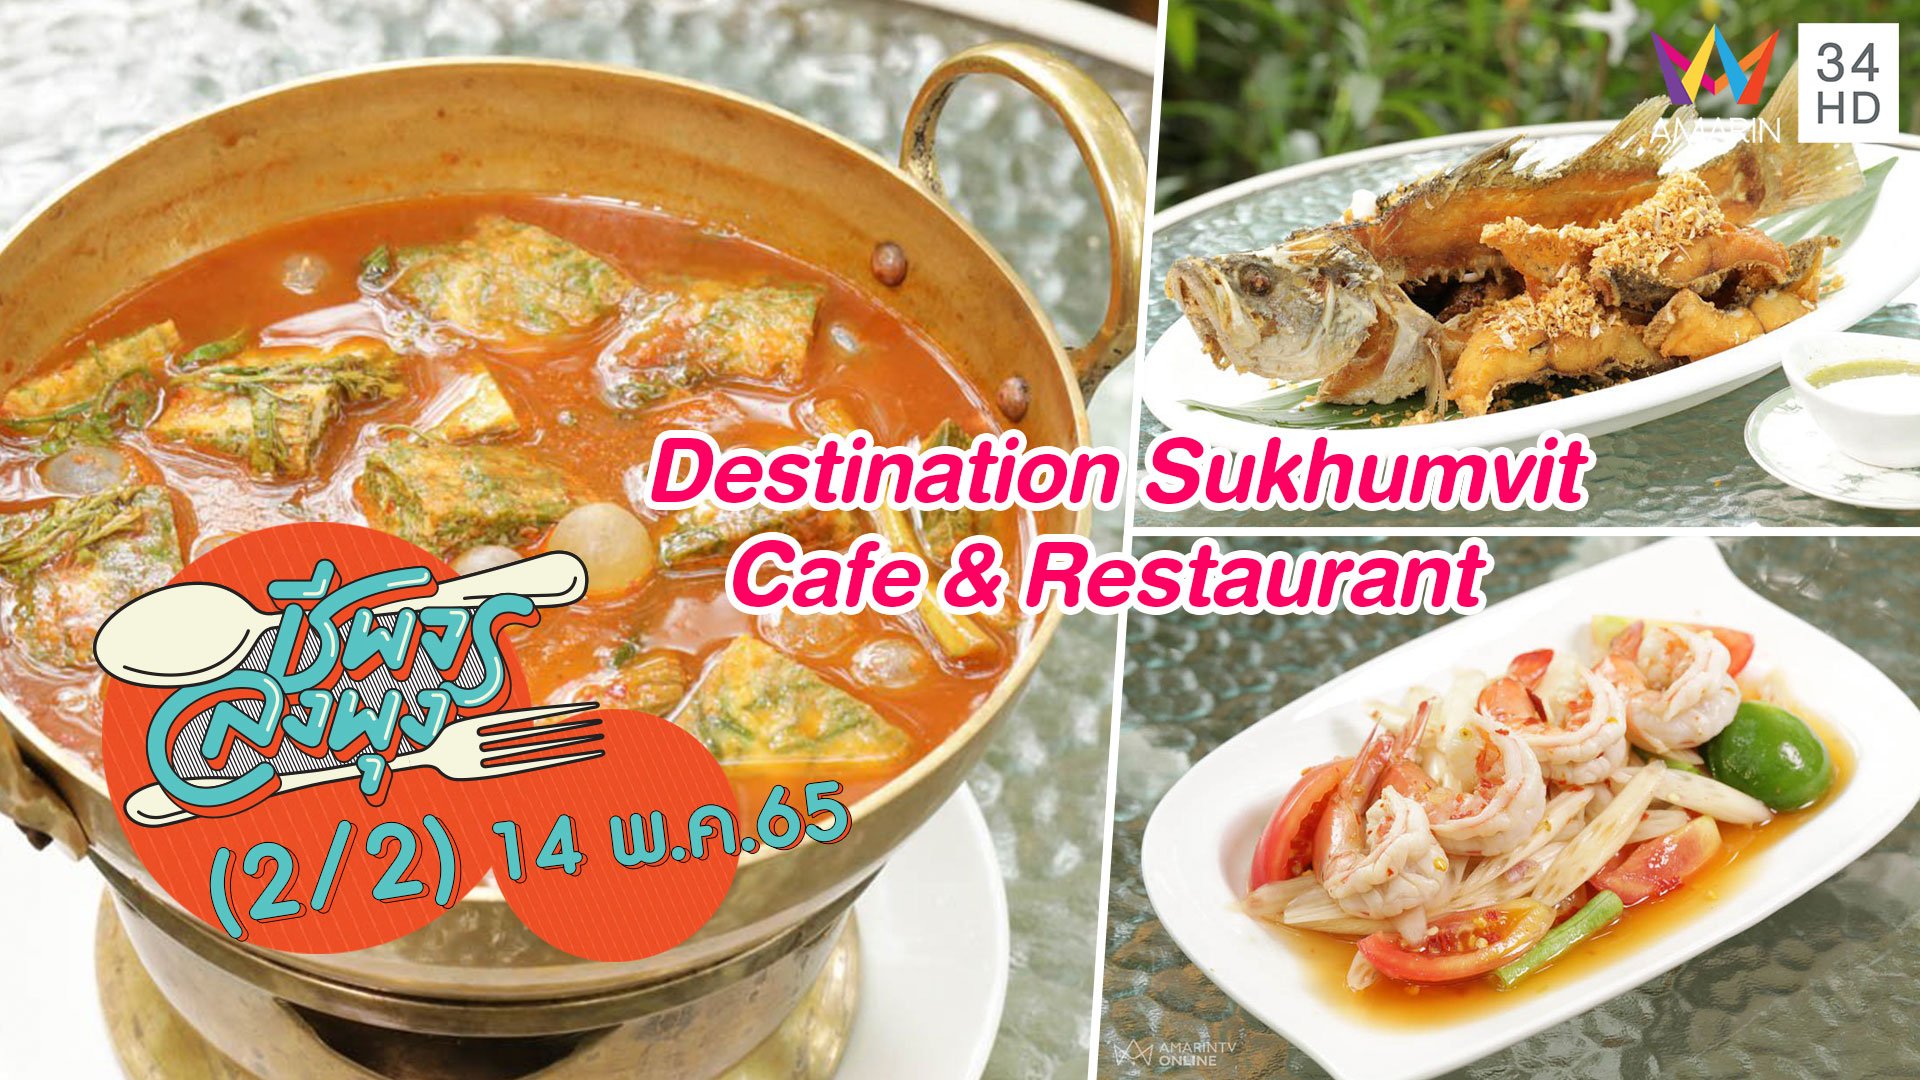 ลิ้มรสอาหารไทยในสวน @ร้าน Destination Sukhumvit Cafe & Restaurant | ชีพจรลงพุง | 14 พ.ค. 65 (2/2) | AMARIN TVHD34